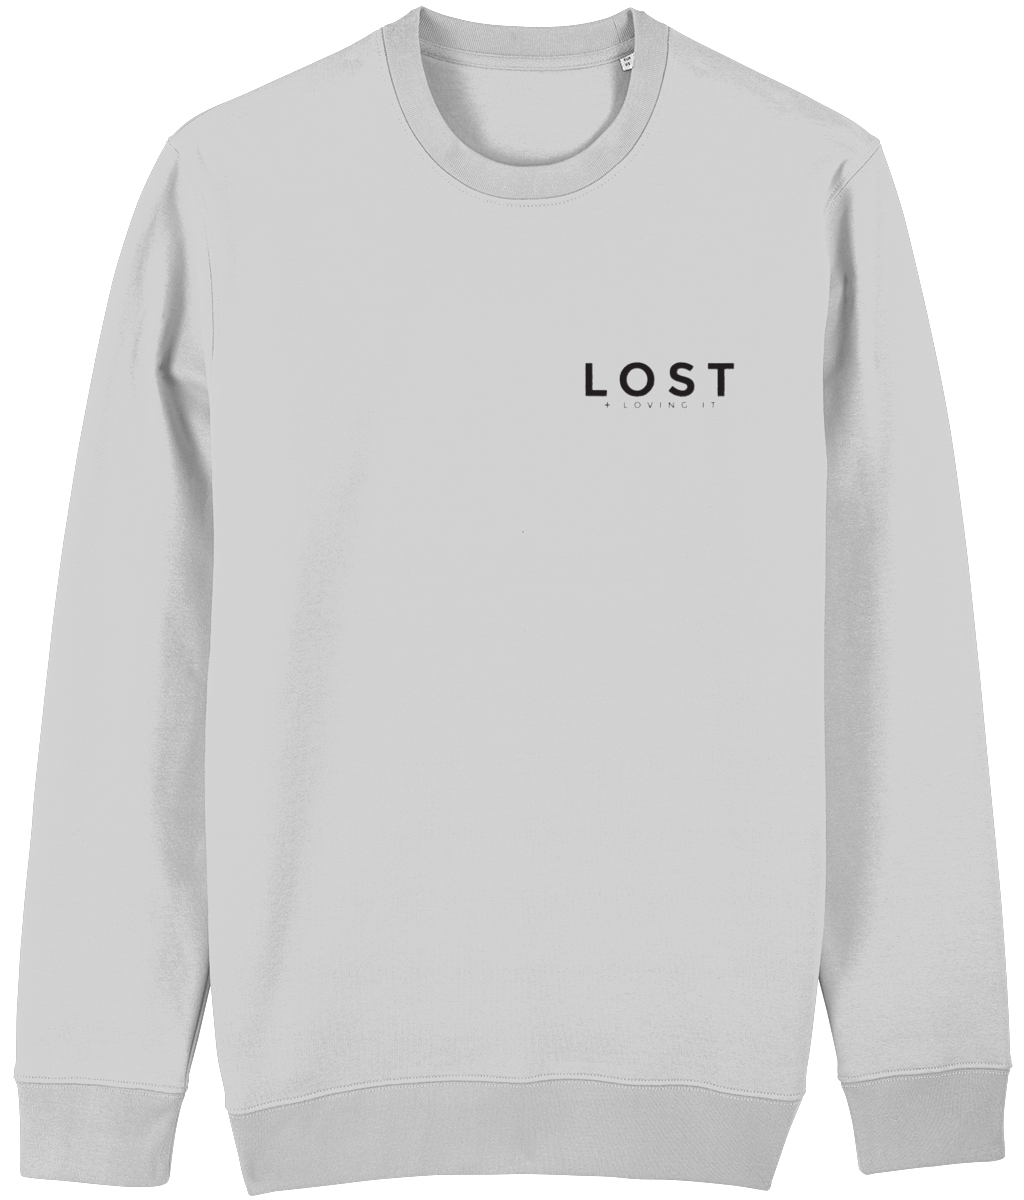 LOST Crew Neck Sweatshirt 2.0